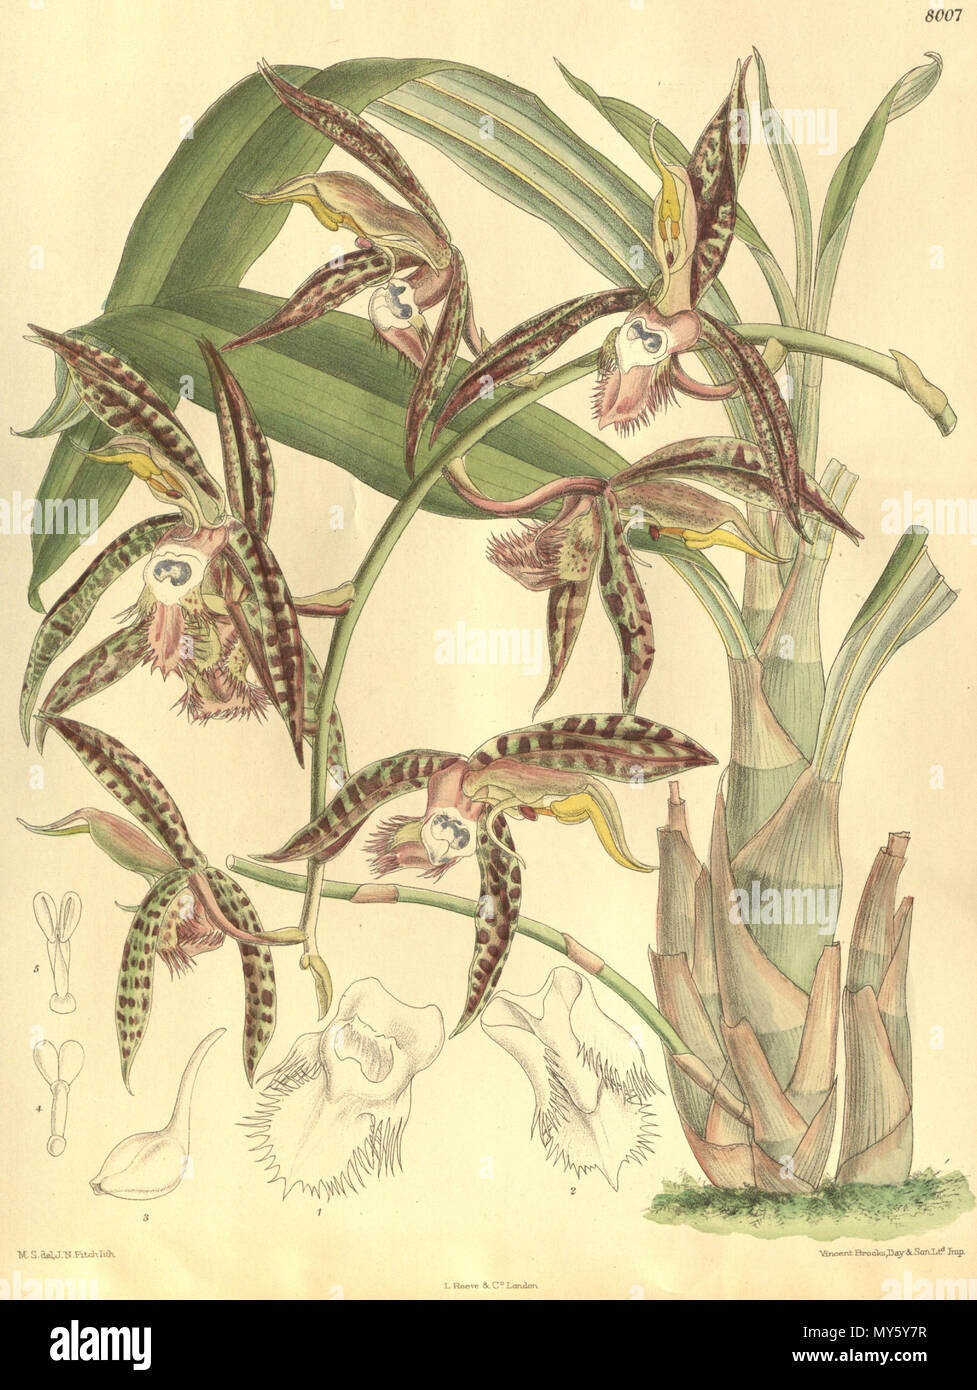 . Illustrazione di Catasetum saccatum (come syn. Catasetum christyanum) . 1905. M. S. del. ( = Matilda Smith, 1854-1926), J. N. Fitch lith. ( = John Nugent Fitch, 1840-1927) Descrizione da R. Rolfe (1855-1921) 101 Catasetum saccatum (come C. christyanum) - Curtis" 131 pl. 8007 (1905) Foto Stock